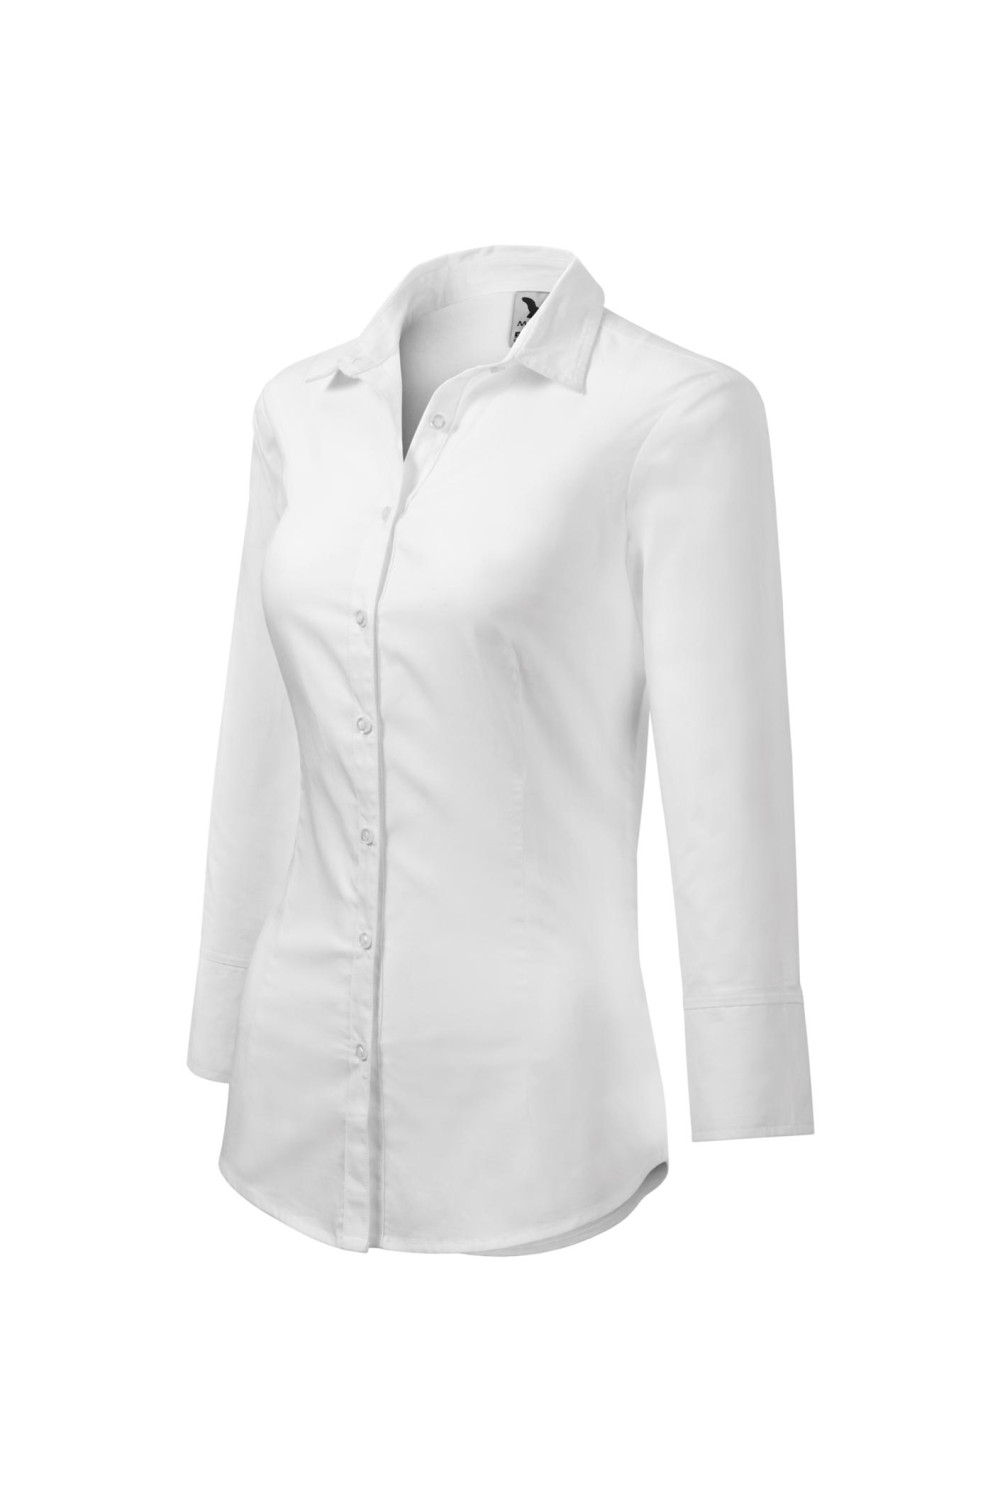 Koszula damska , rękaw 3/4, 100% bawełna, kelnerska, wizytowa STYLE 218 koszule biały